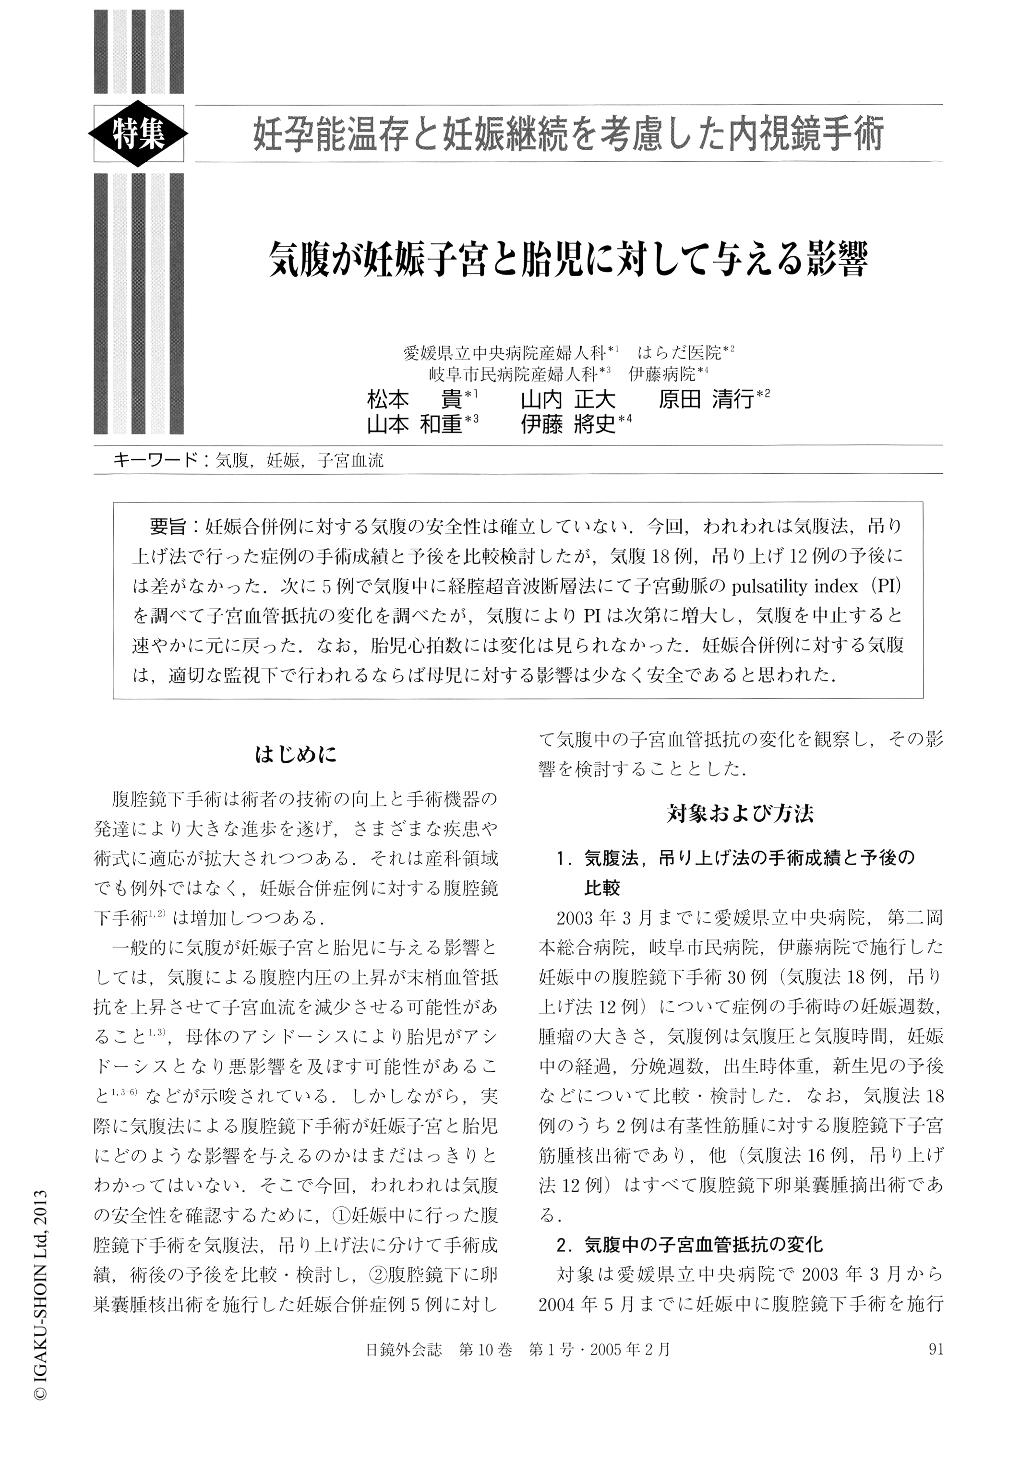 気腹が妊娠子宮と胎児に対して与える影響 (日本内視鏡外科学会雑誌 10 